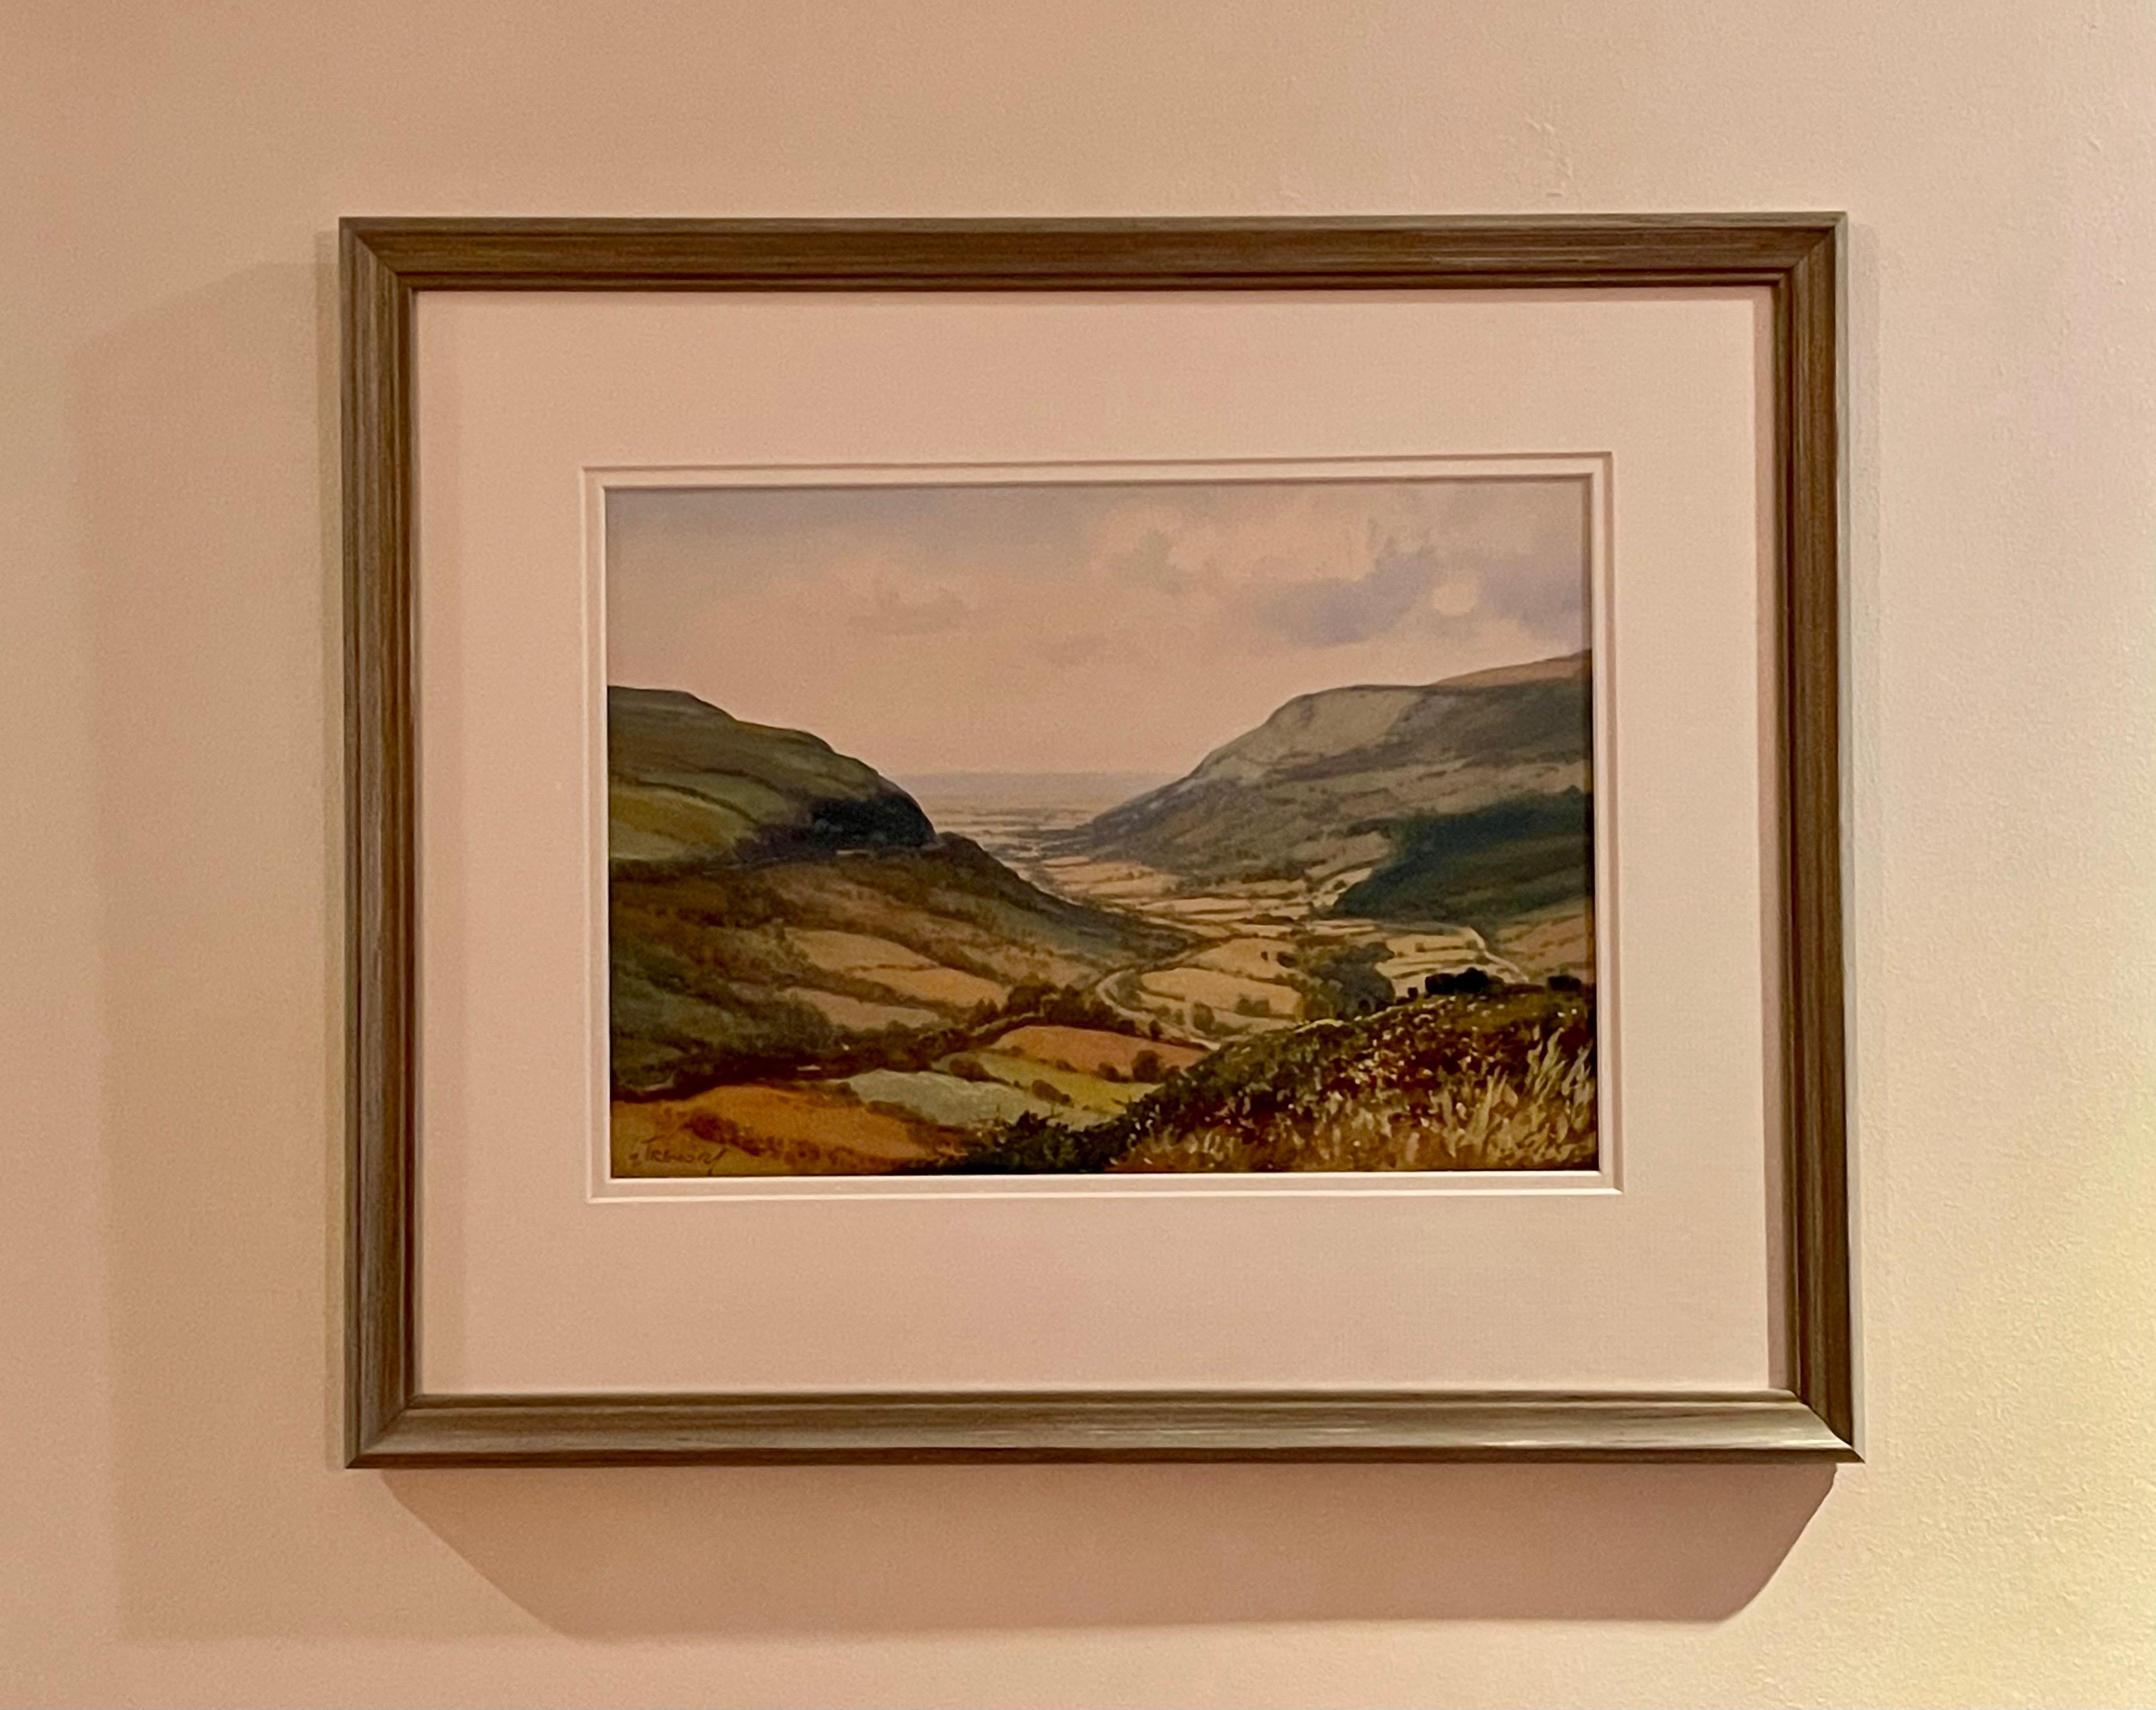 Aquarelle d'une vallée d'Irlande par un artiste irlandais du 20e siècle - Réalisme Art par George Trevor